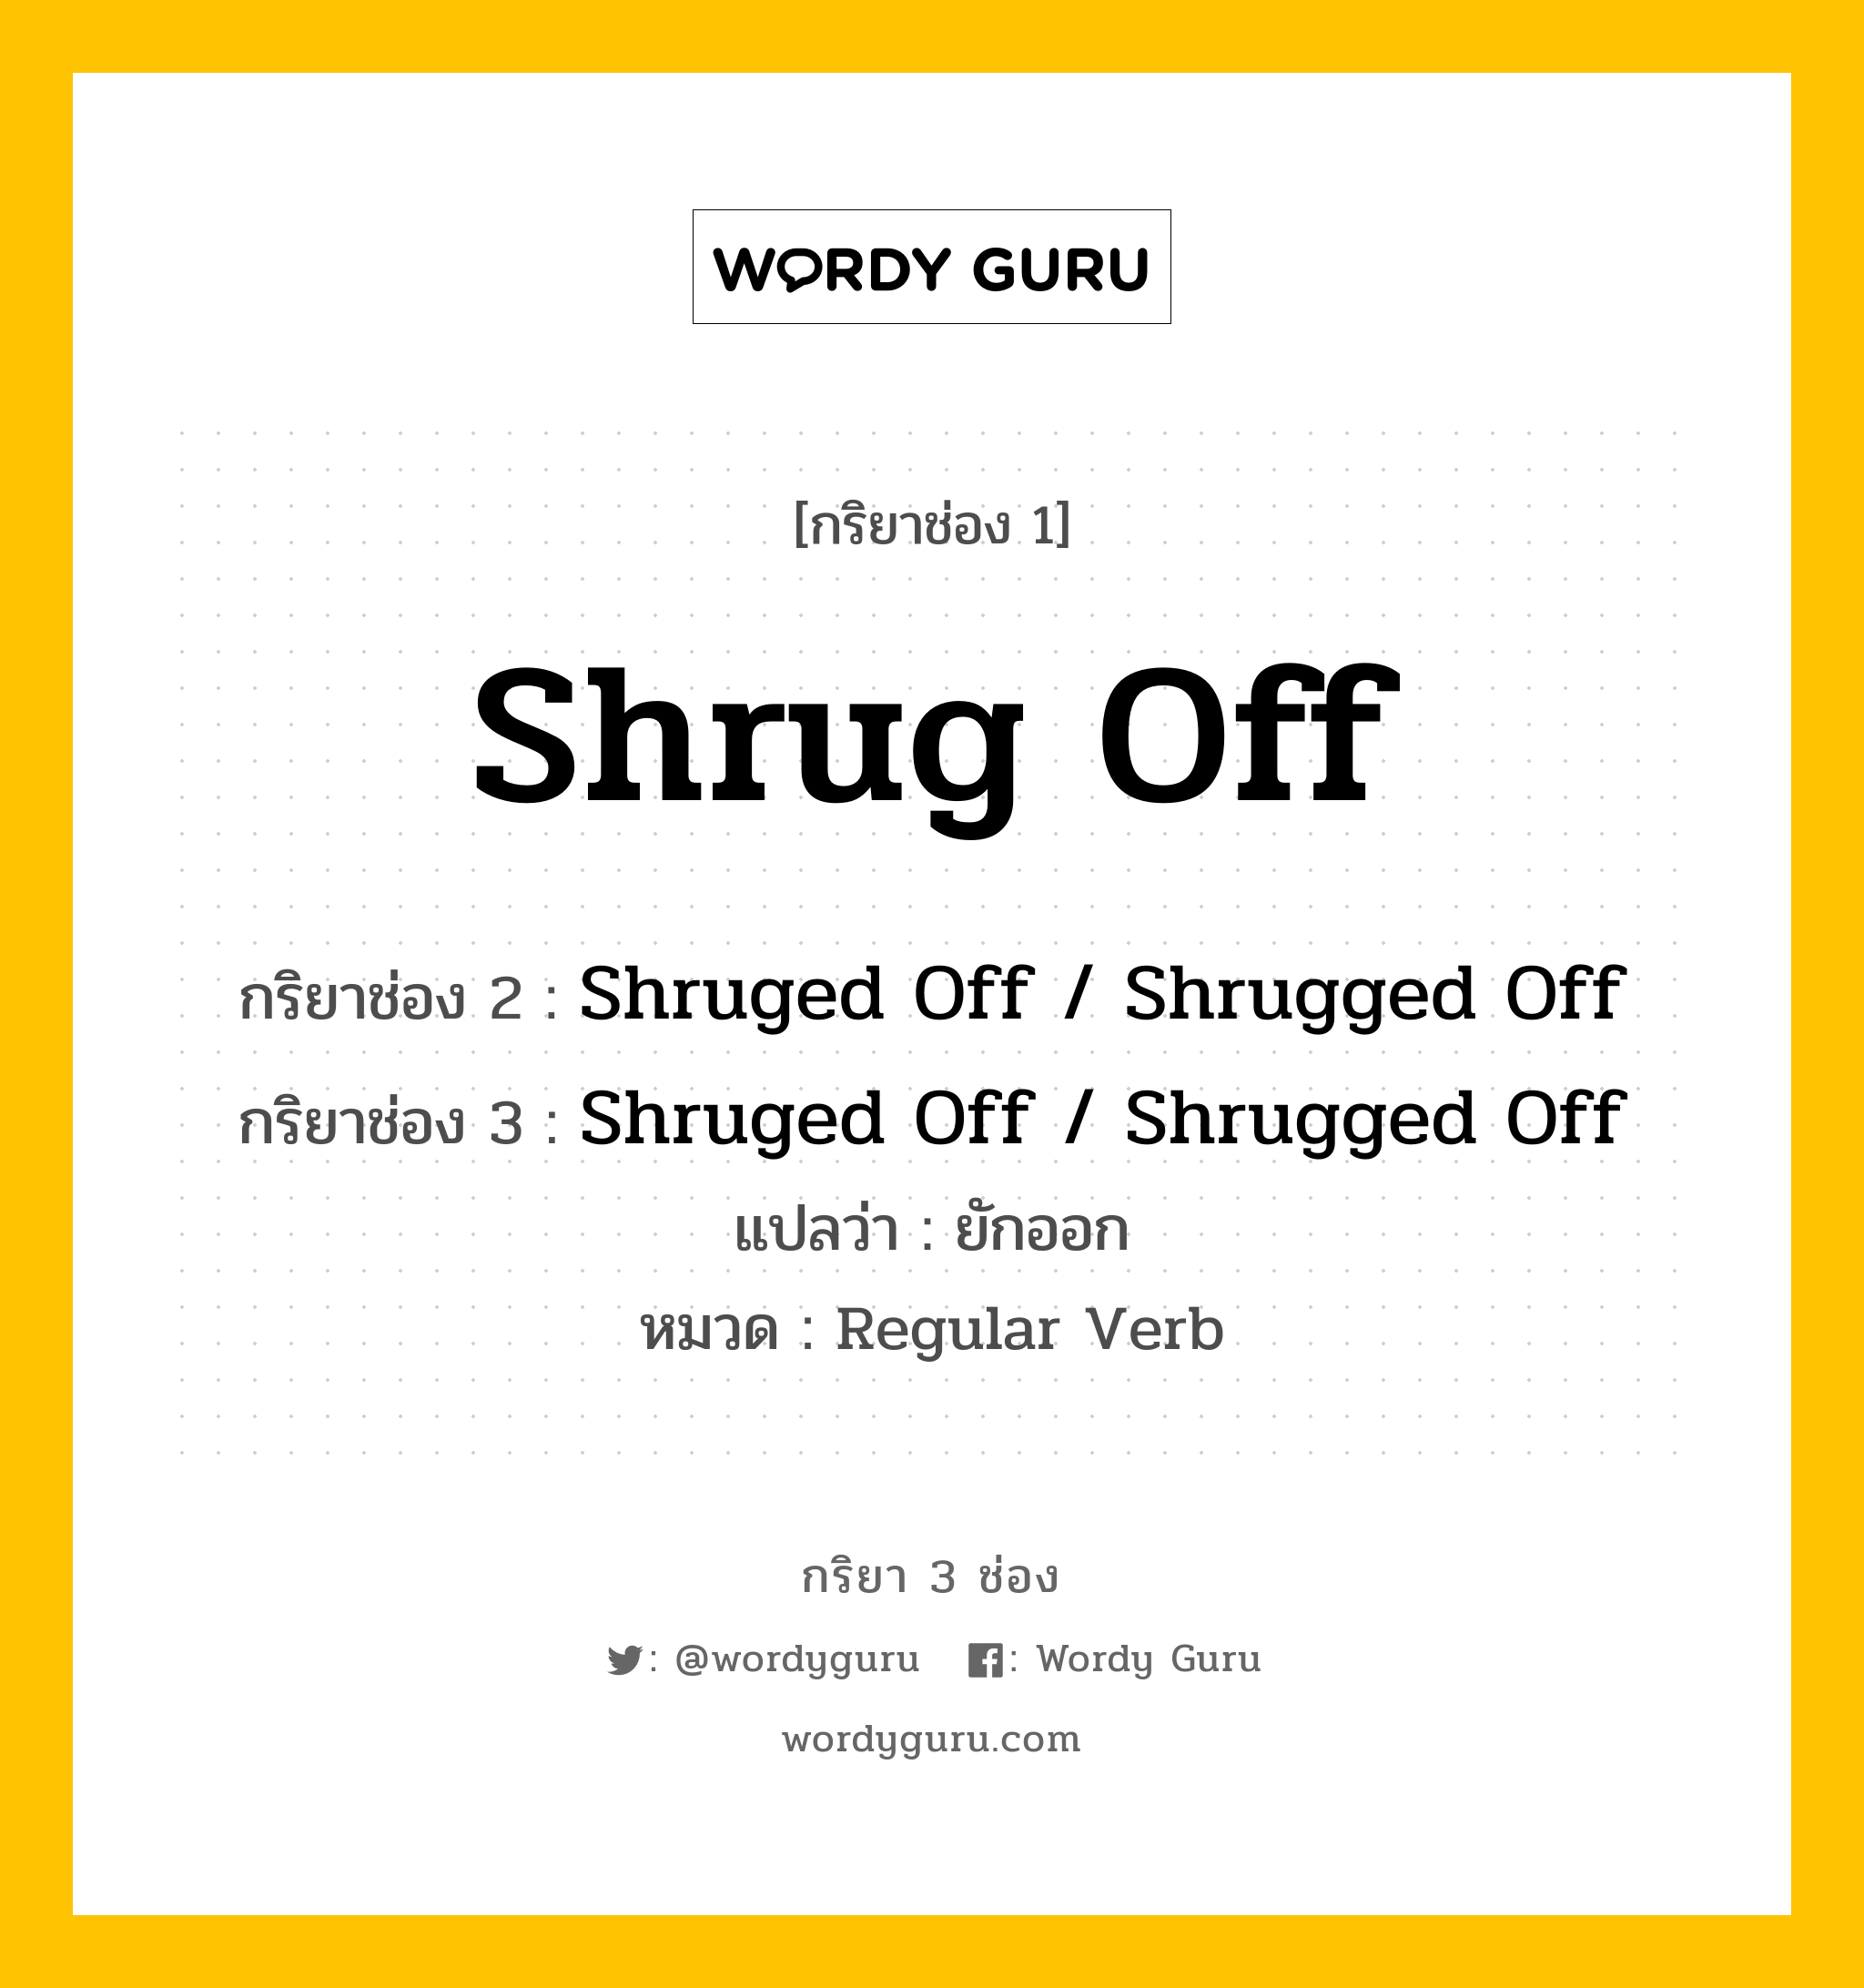 กริยา 3 ช่อง ของ Shrug Off คืออะไร? มาดูคำอ่าน คำแปลกันเลย, กริยาช่อง 1 Shrug Off กริยาช่อง 2 Shruged Off / Shrugged Off กริยาช่อง 3 Shruged Off / Shrugged Off แปลว่า ยักออก หมวด Regular Verb หมวด Regular Verb